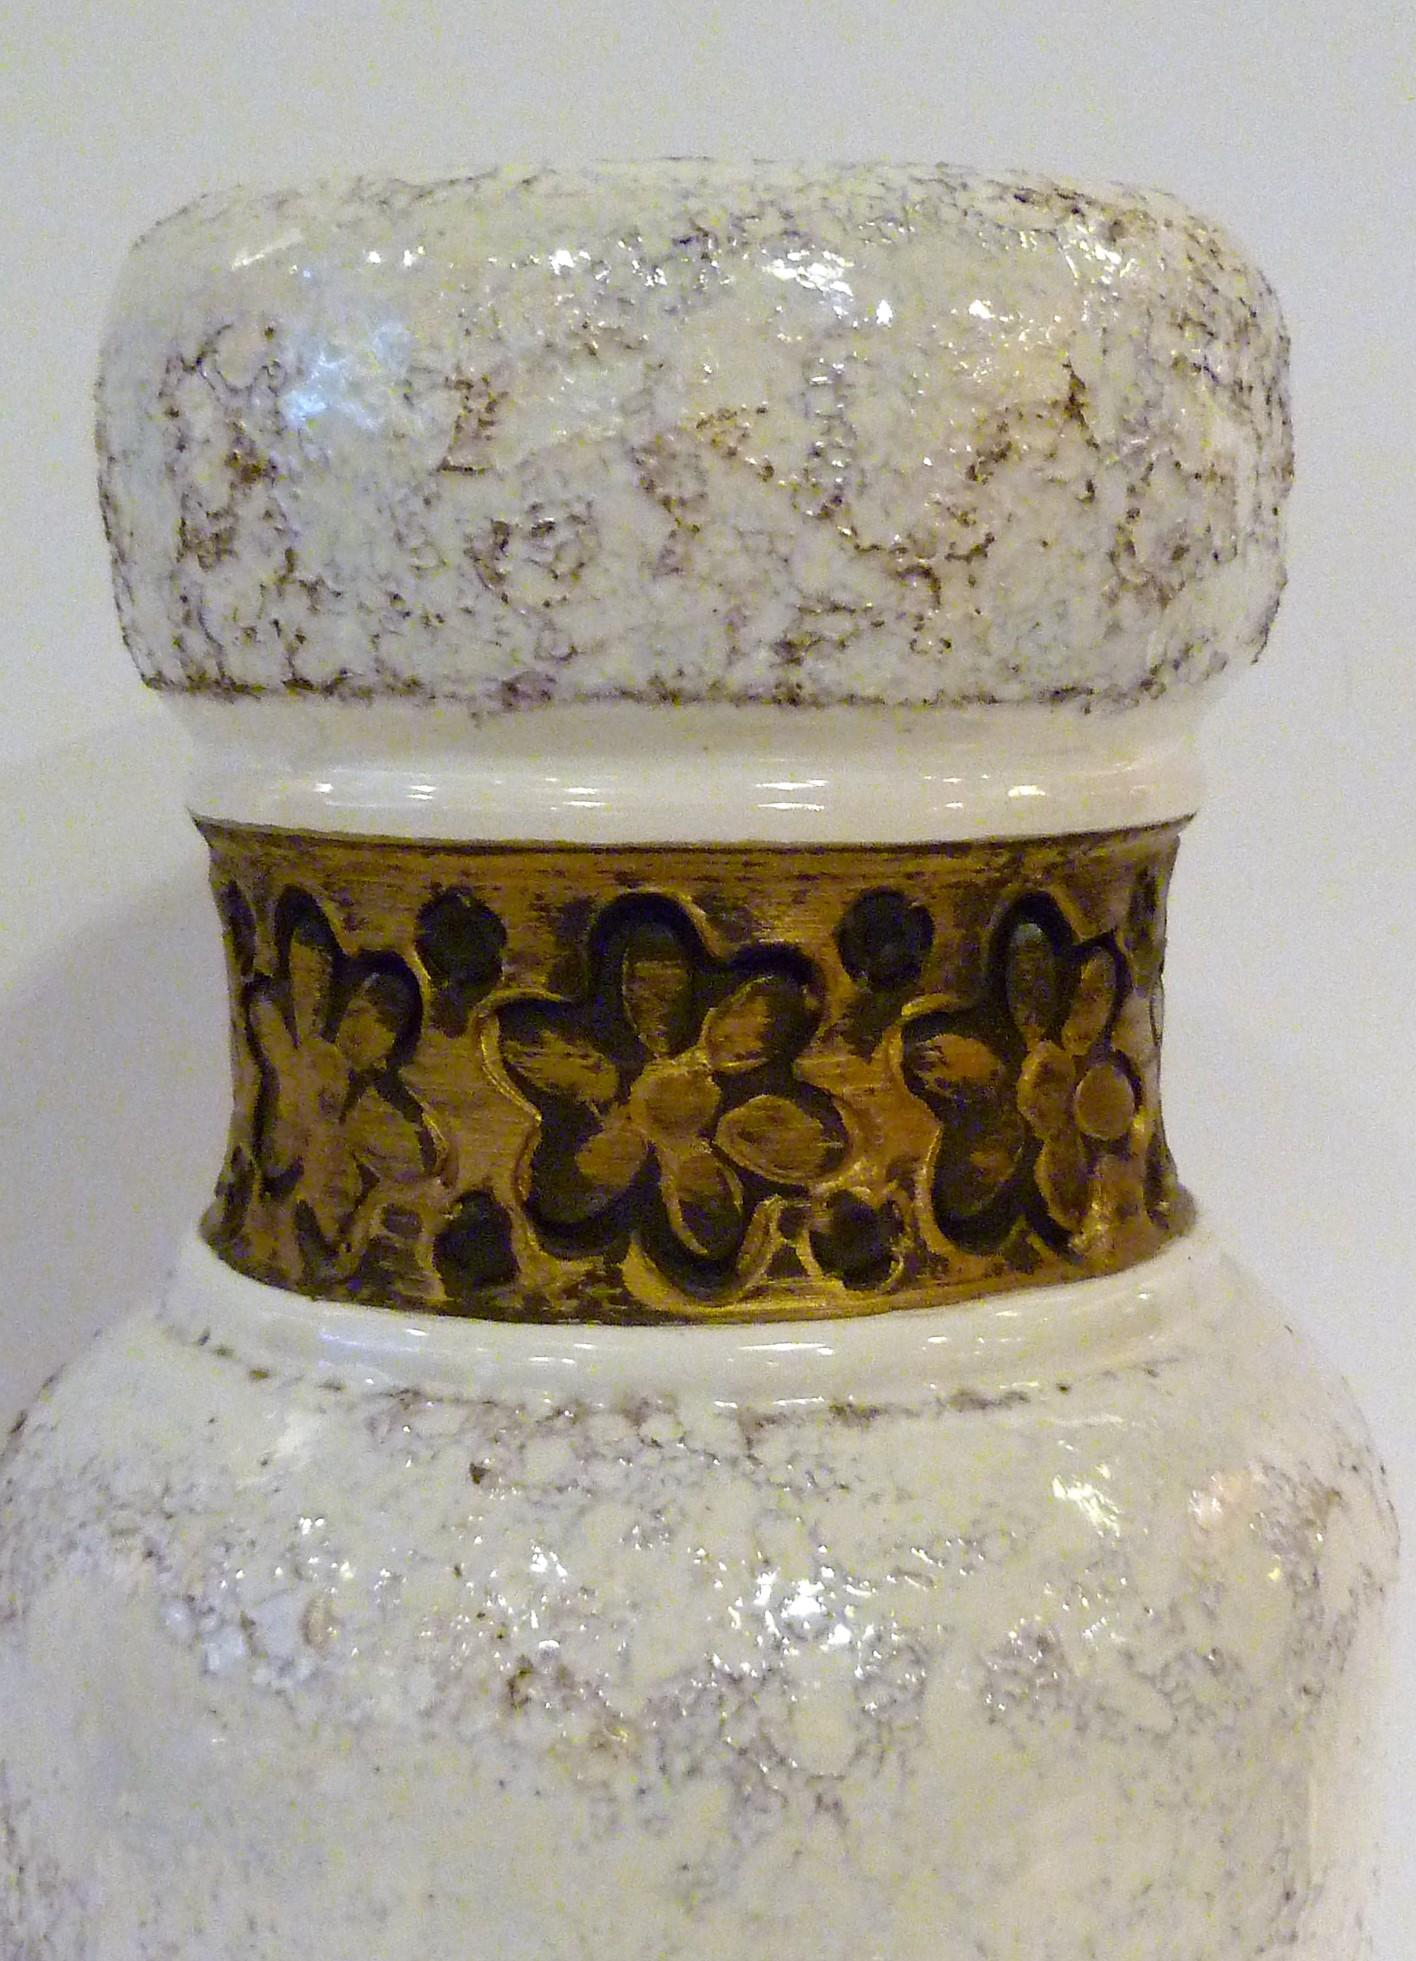 Glazed Aldo Londi for Rosenthal Netter Bitossi Modern Textured Pottery Vase Italy 1960s